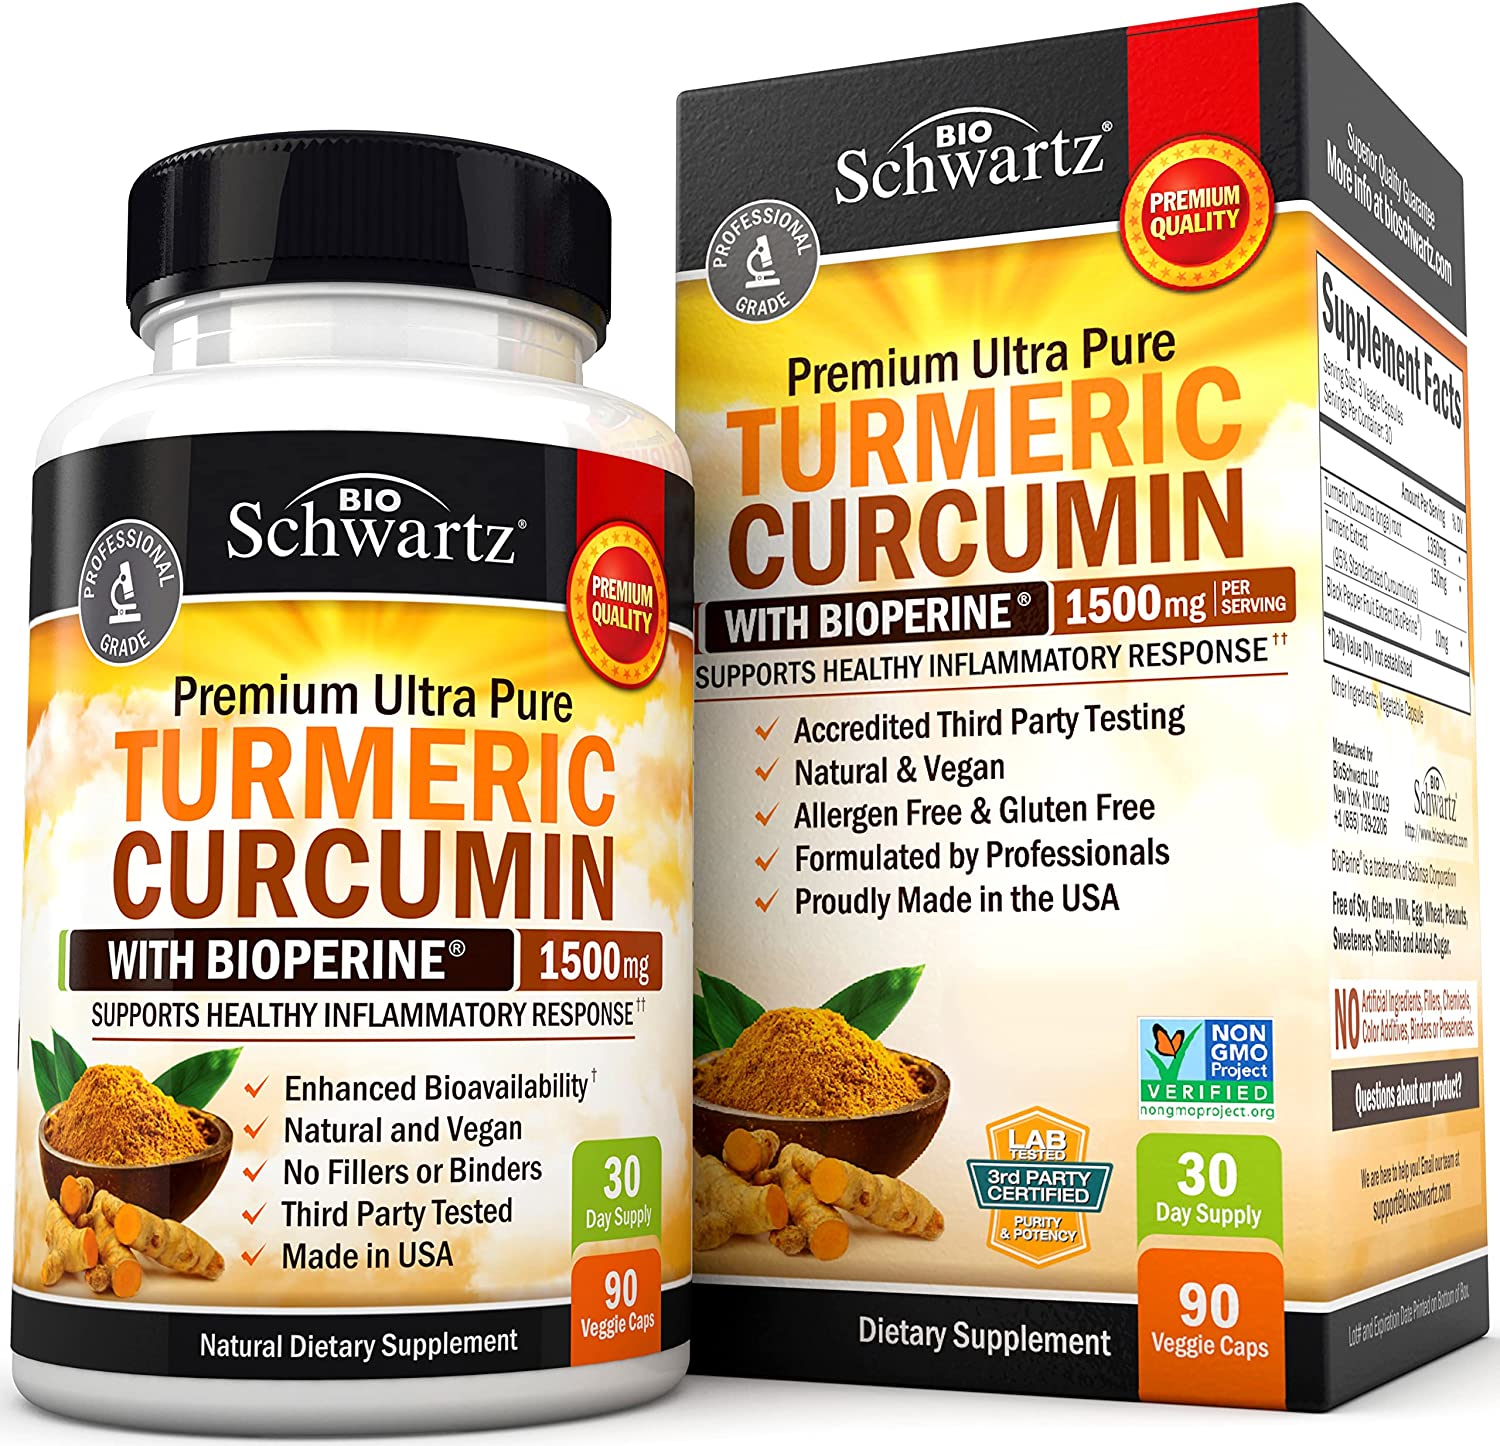 Turmeric Curcumin Review